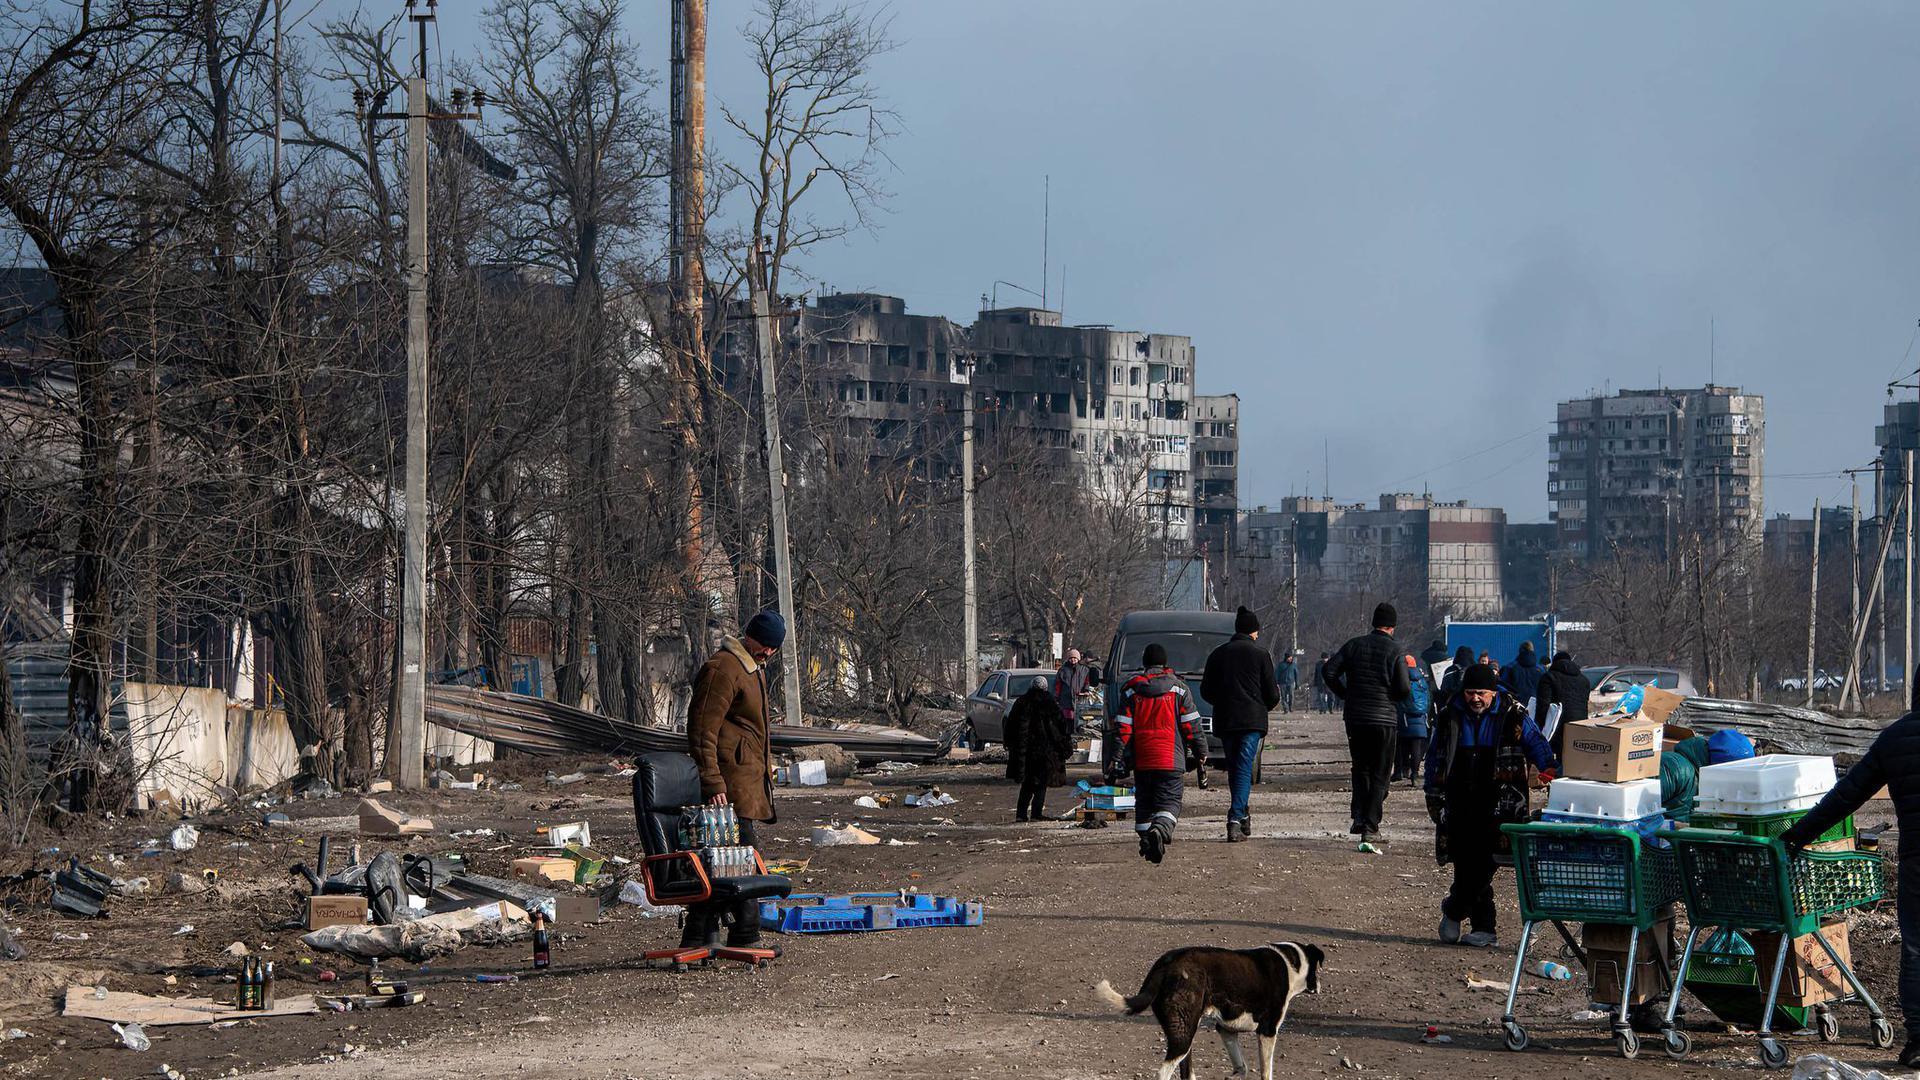 乌克兰40万居民被困避难所吃狗求生,一父亲:我当儿子的人体盾牌